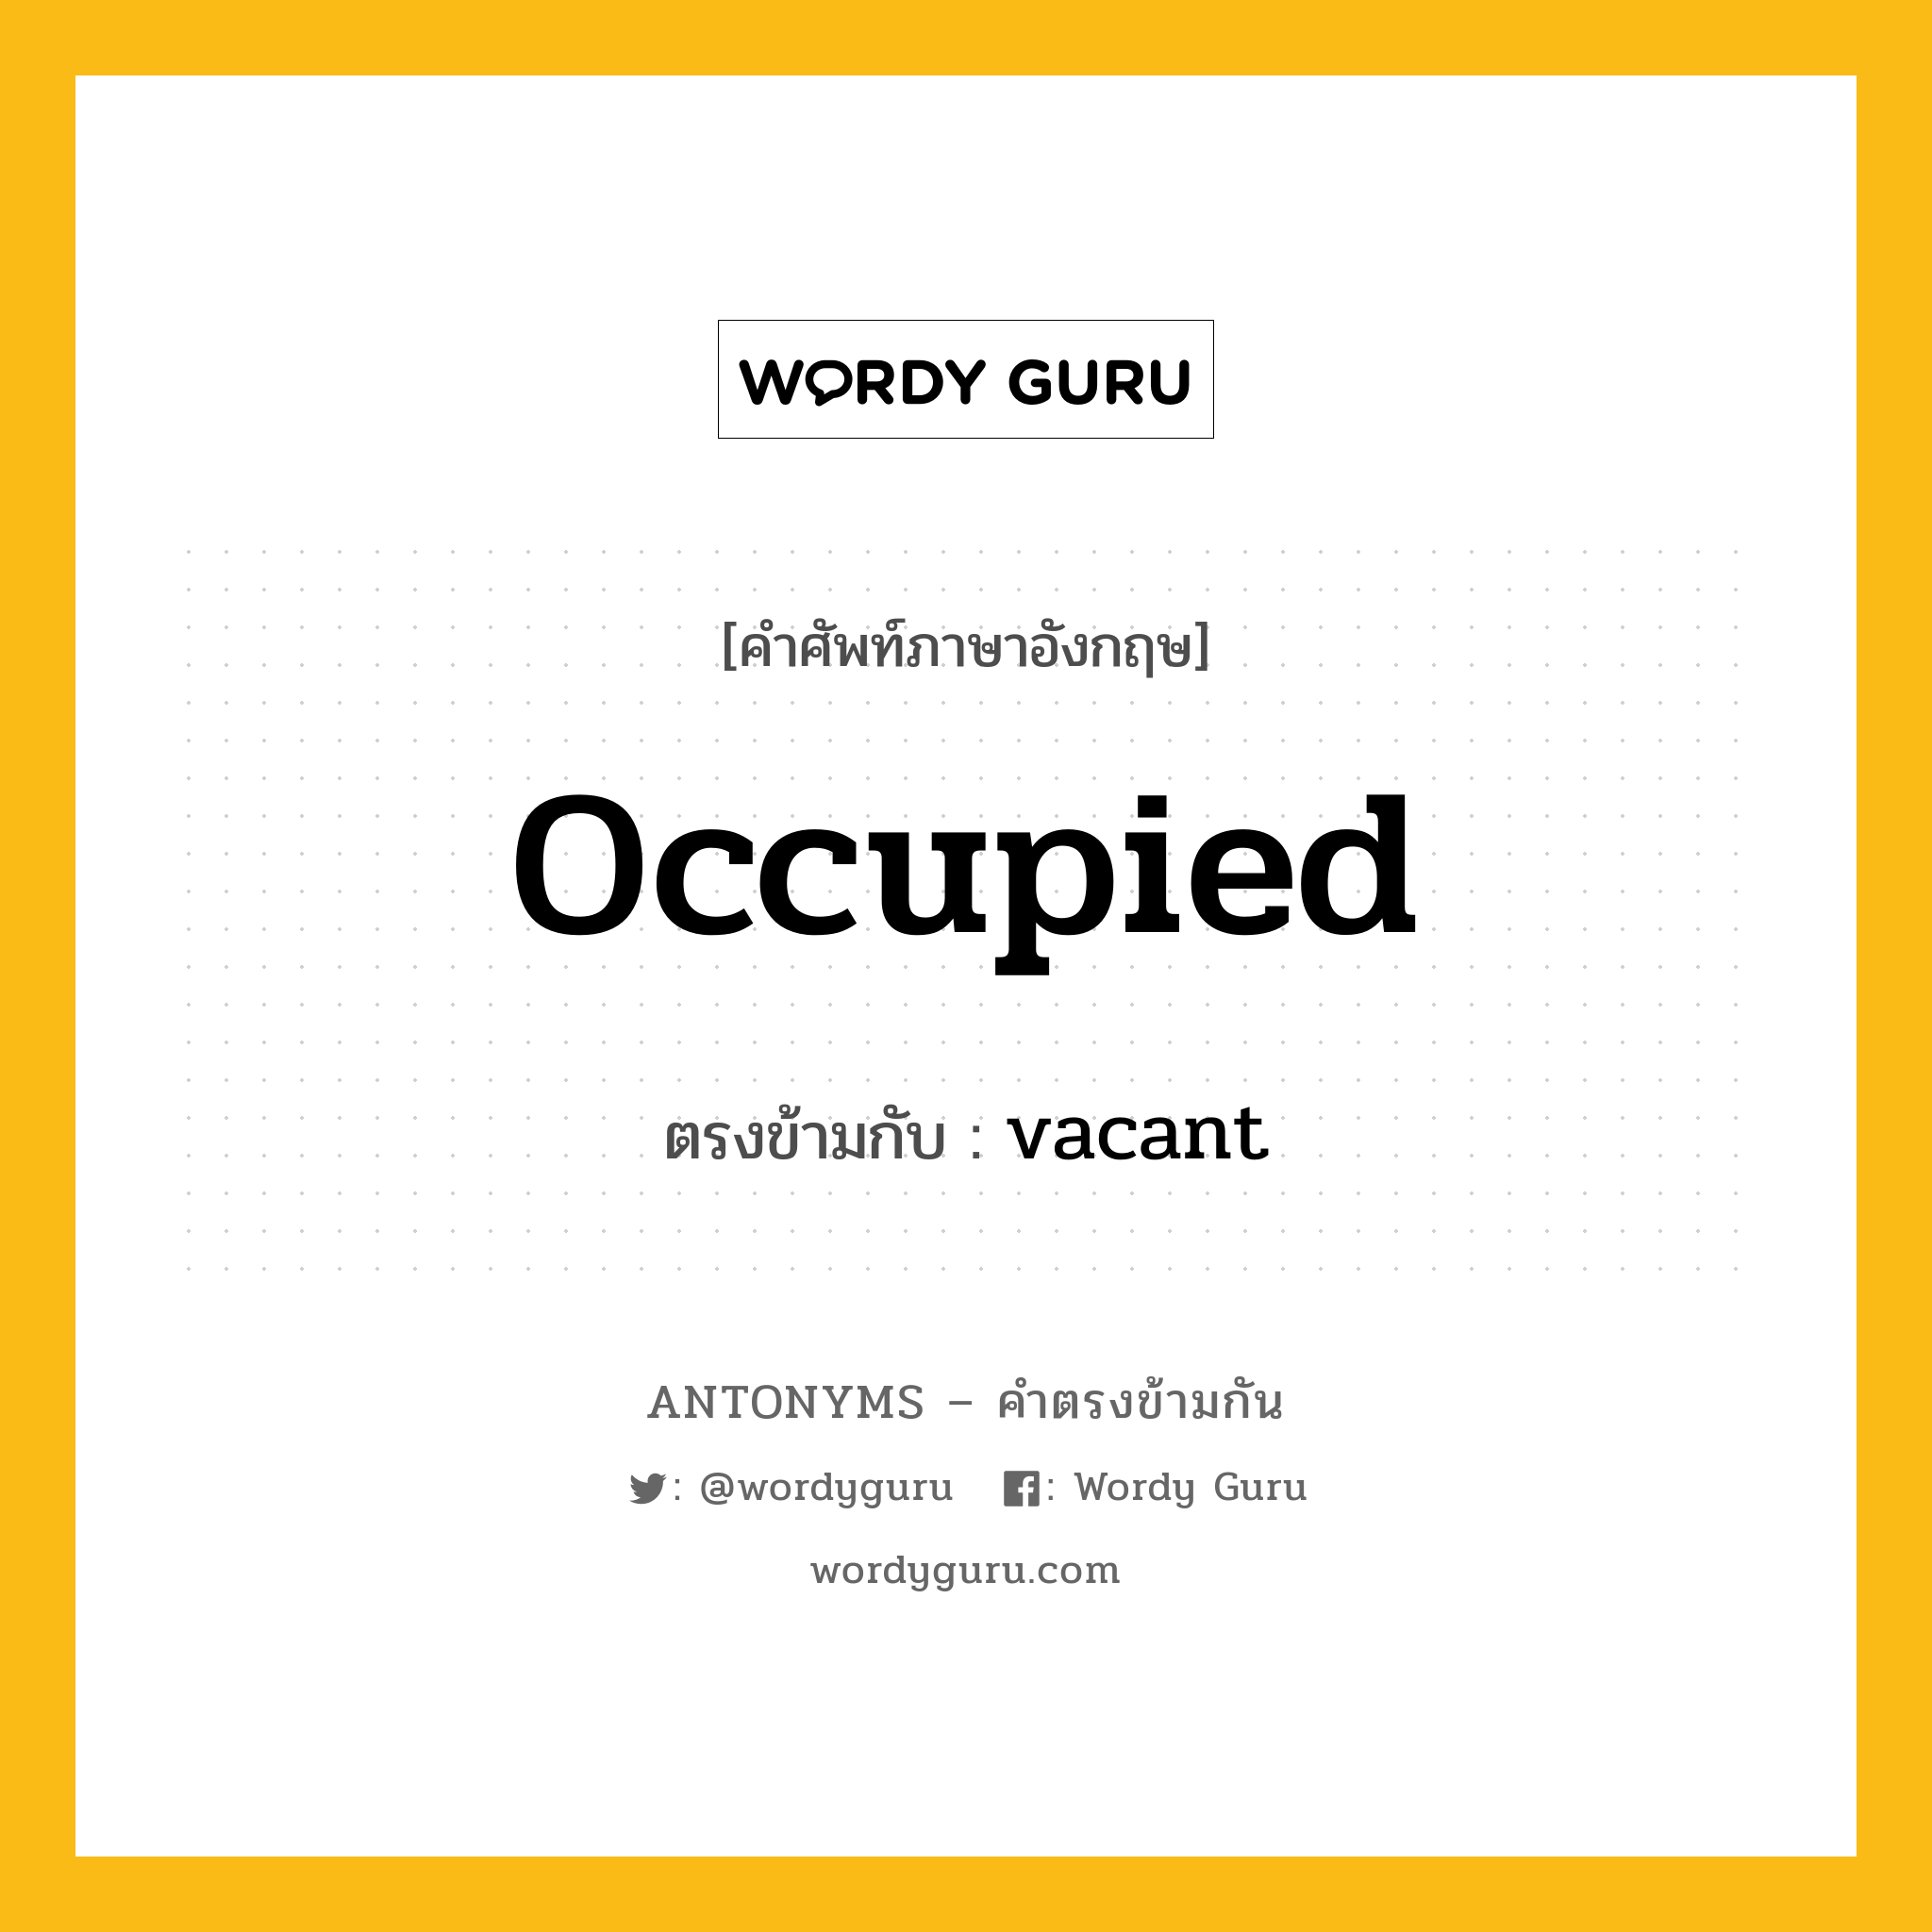 occupied เป็นคำตรงข้ามกับคำไหนบ้าง?, คำศัพท์ภาษาอังกฤษ occupied ตรงข้ามกับ vacant หมวด vacant